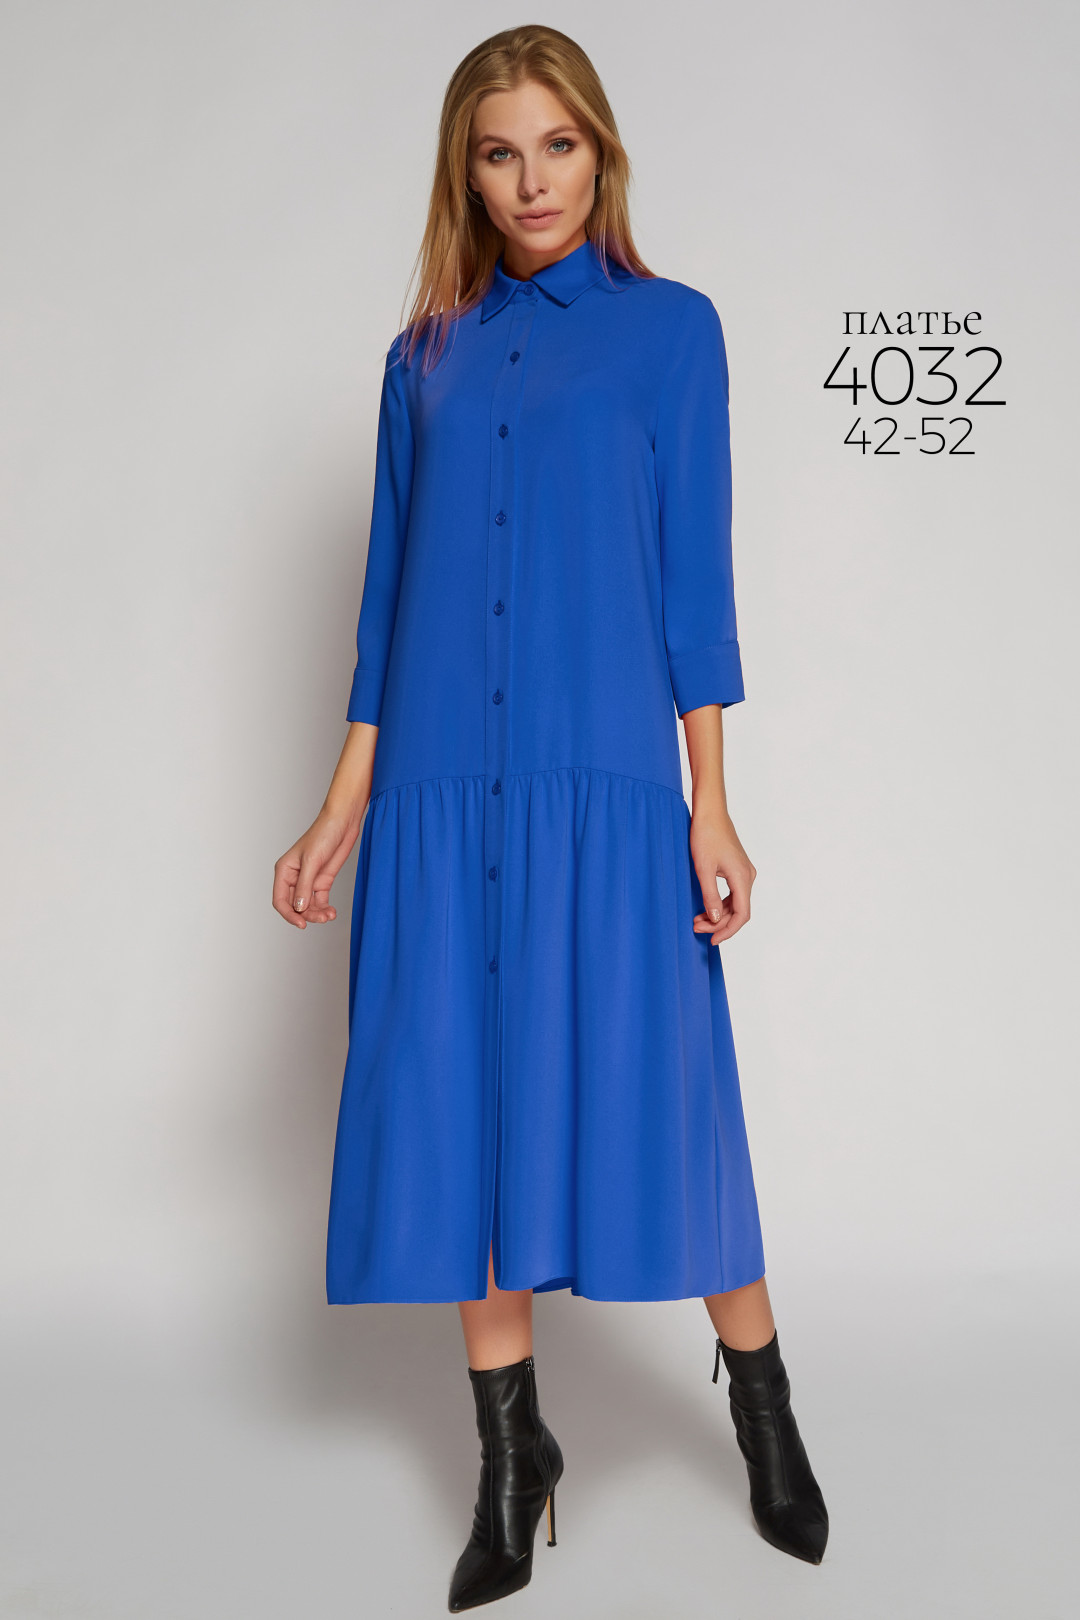 Платье Bazalini 4032 синий